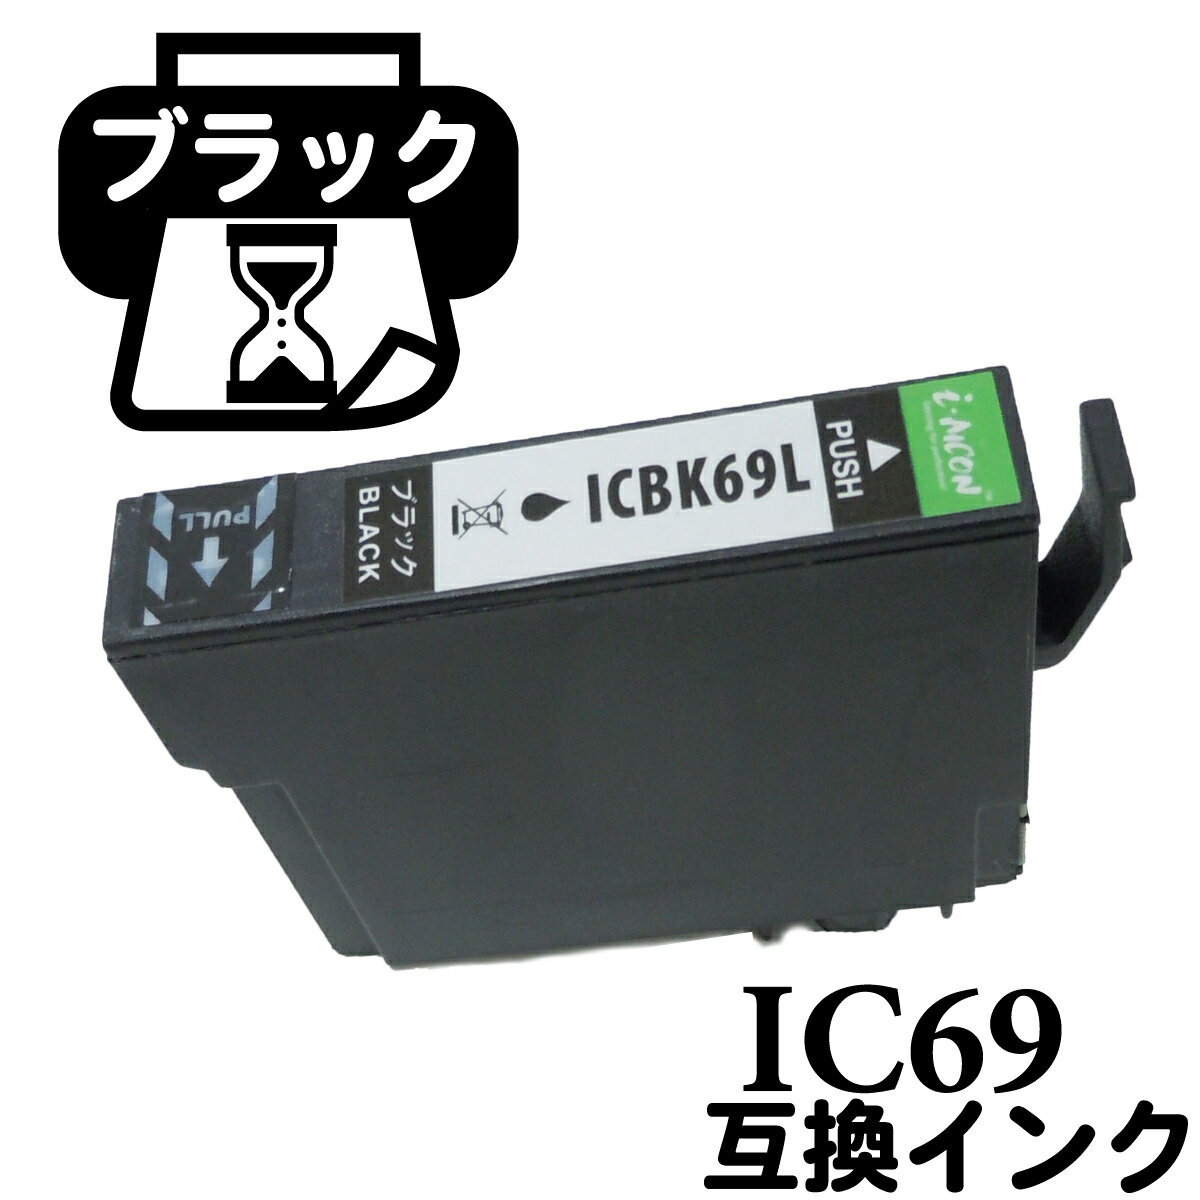 IC69BK ICBK69 互換 互換インクカートリッジ IC69 砂時計 すなどけい ICチップ付 インクカートリッジ epson エプソン互換インク インク交換 プリンターインク インク エプソン エプソンインク